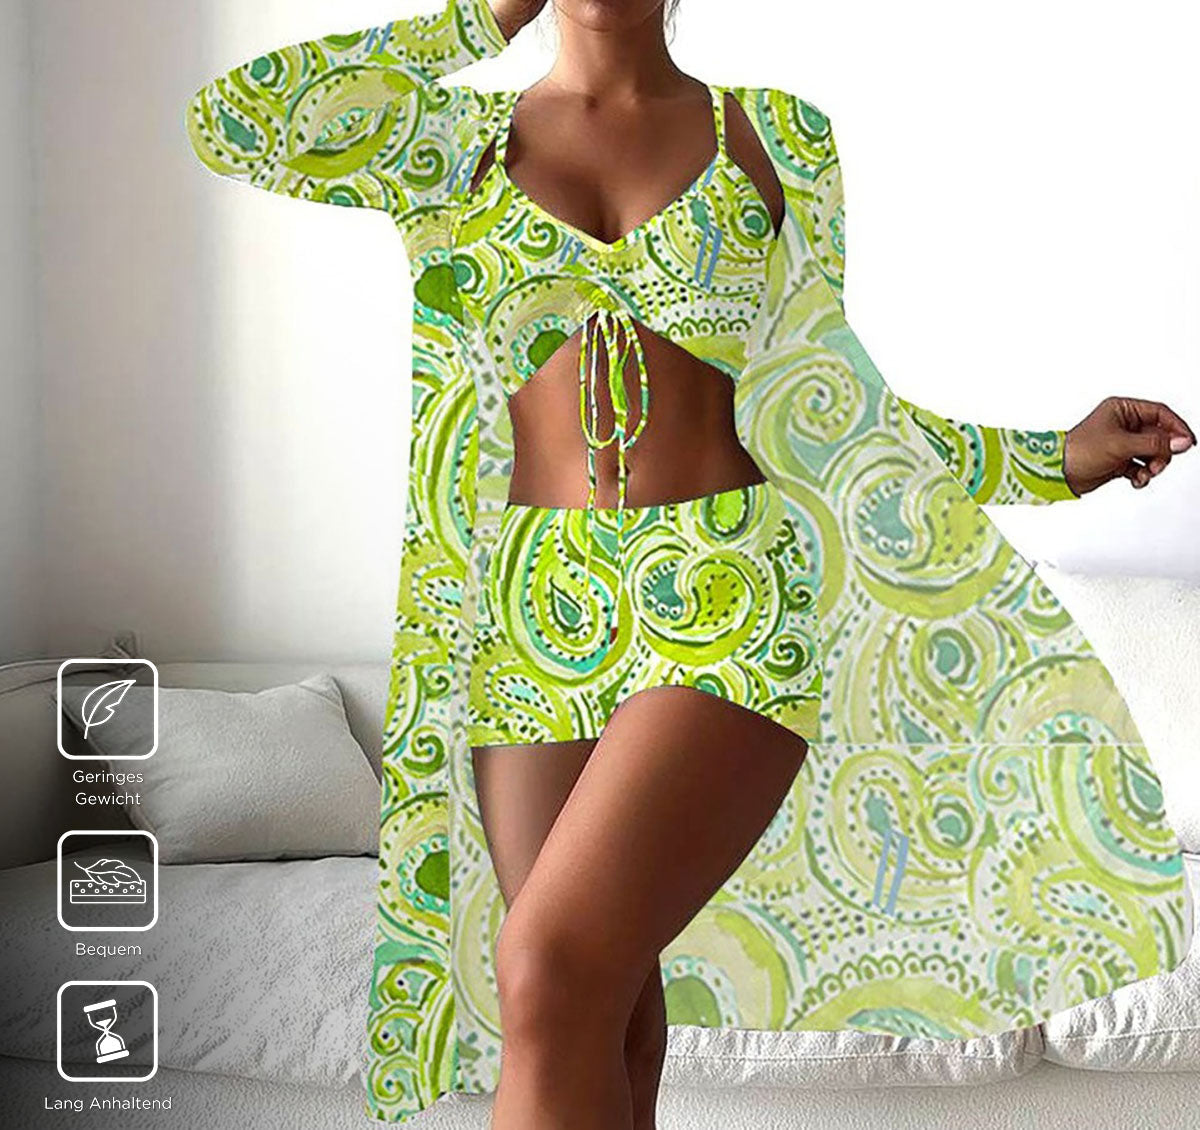 CabanaCouture® - Frische grüne Print-Badebekleidung